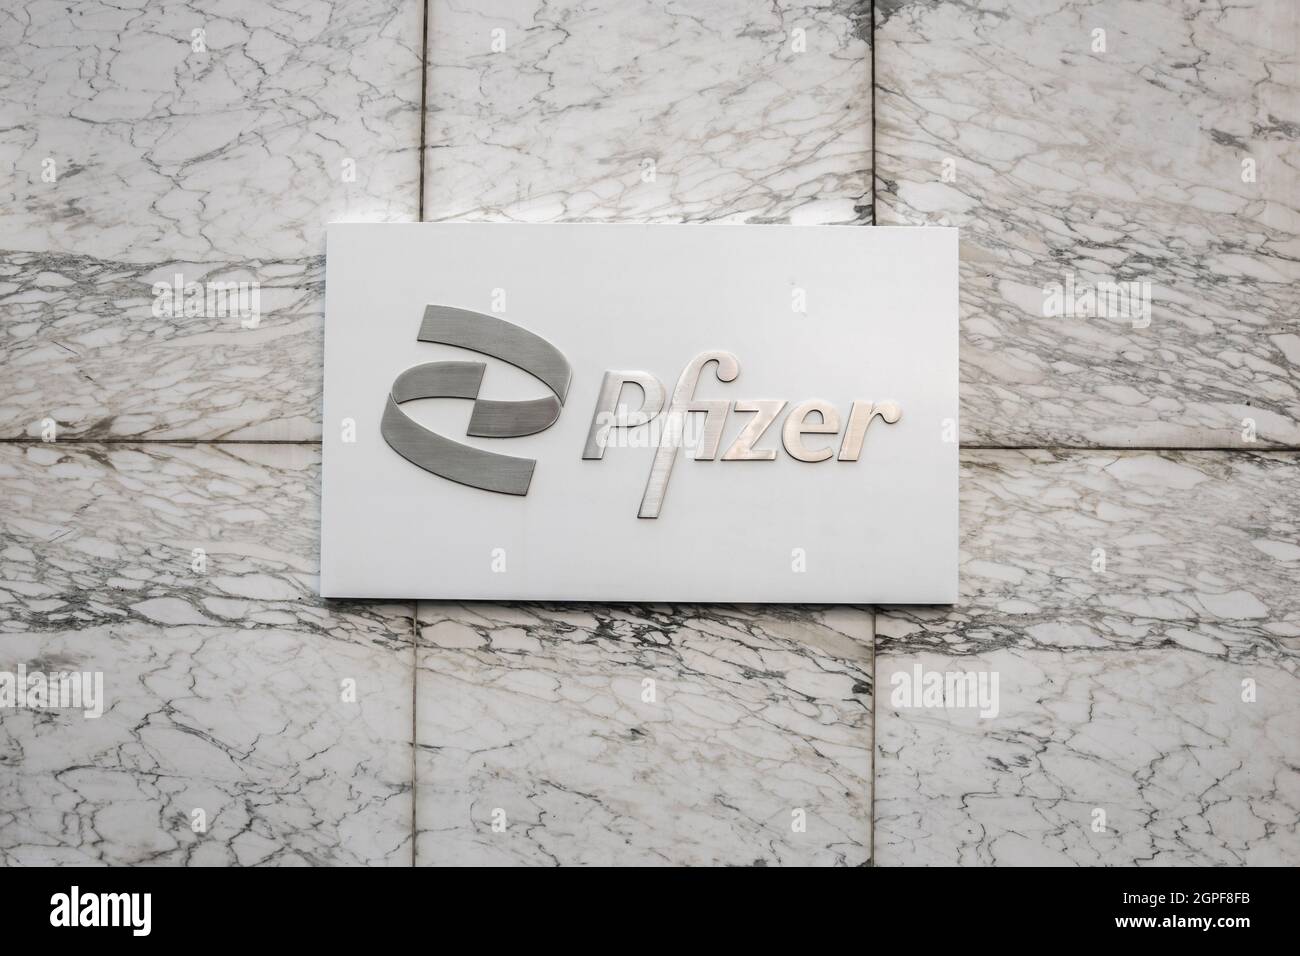 New York, NY, US - 24 août 2021 : bureau Pfizer à Manhattan. Pfizer est une société pharmaceutique multinationale américaine. Banque D'Images